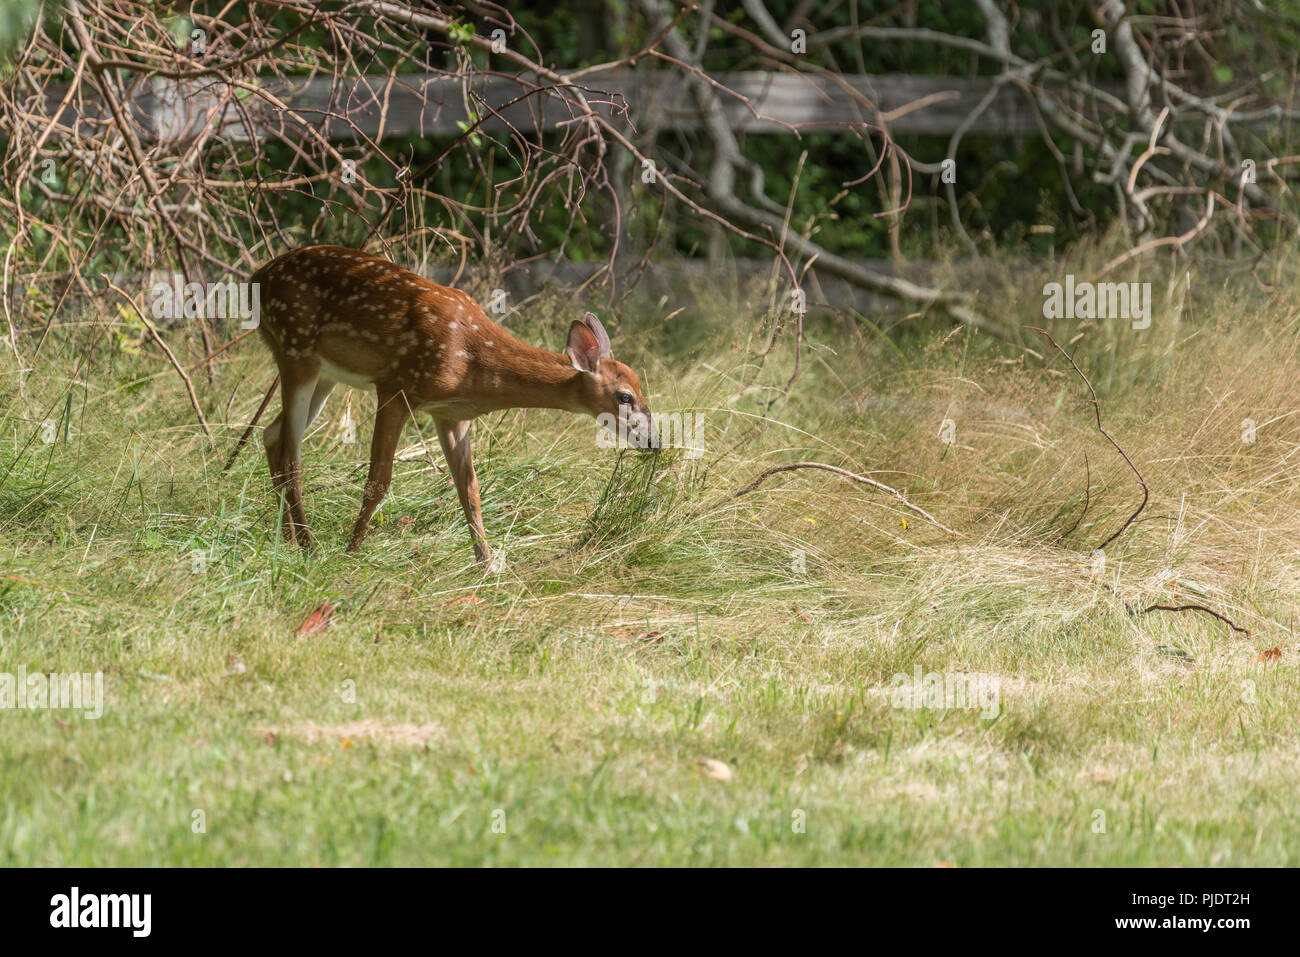 Baby Deer Fawn con il bianco dapples sul cappotto esplorando in erba lunga Foto Stock